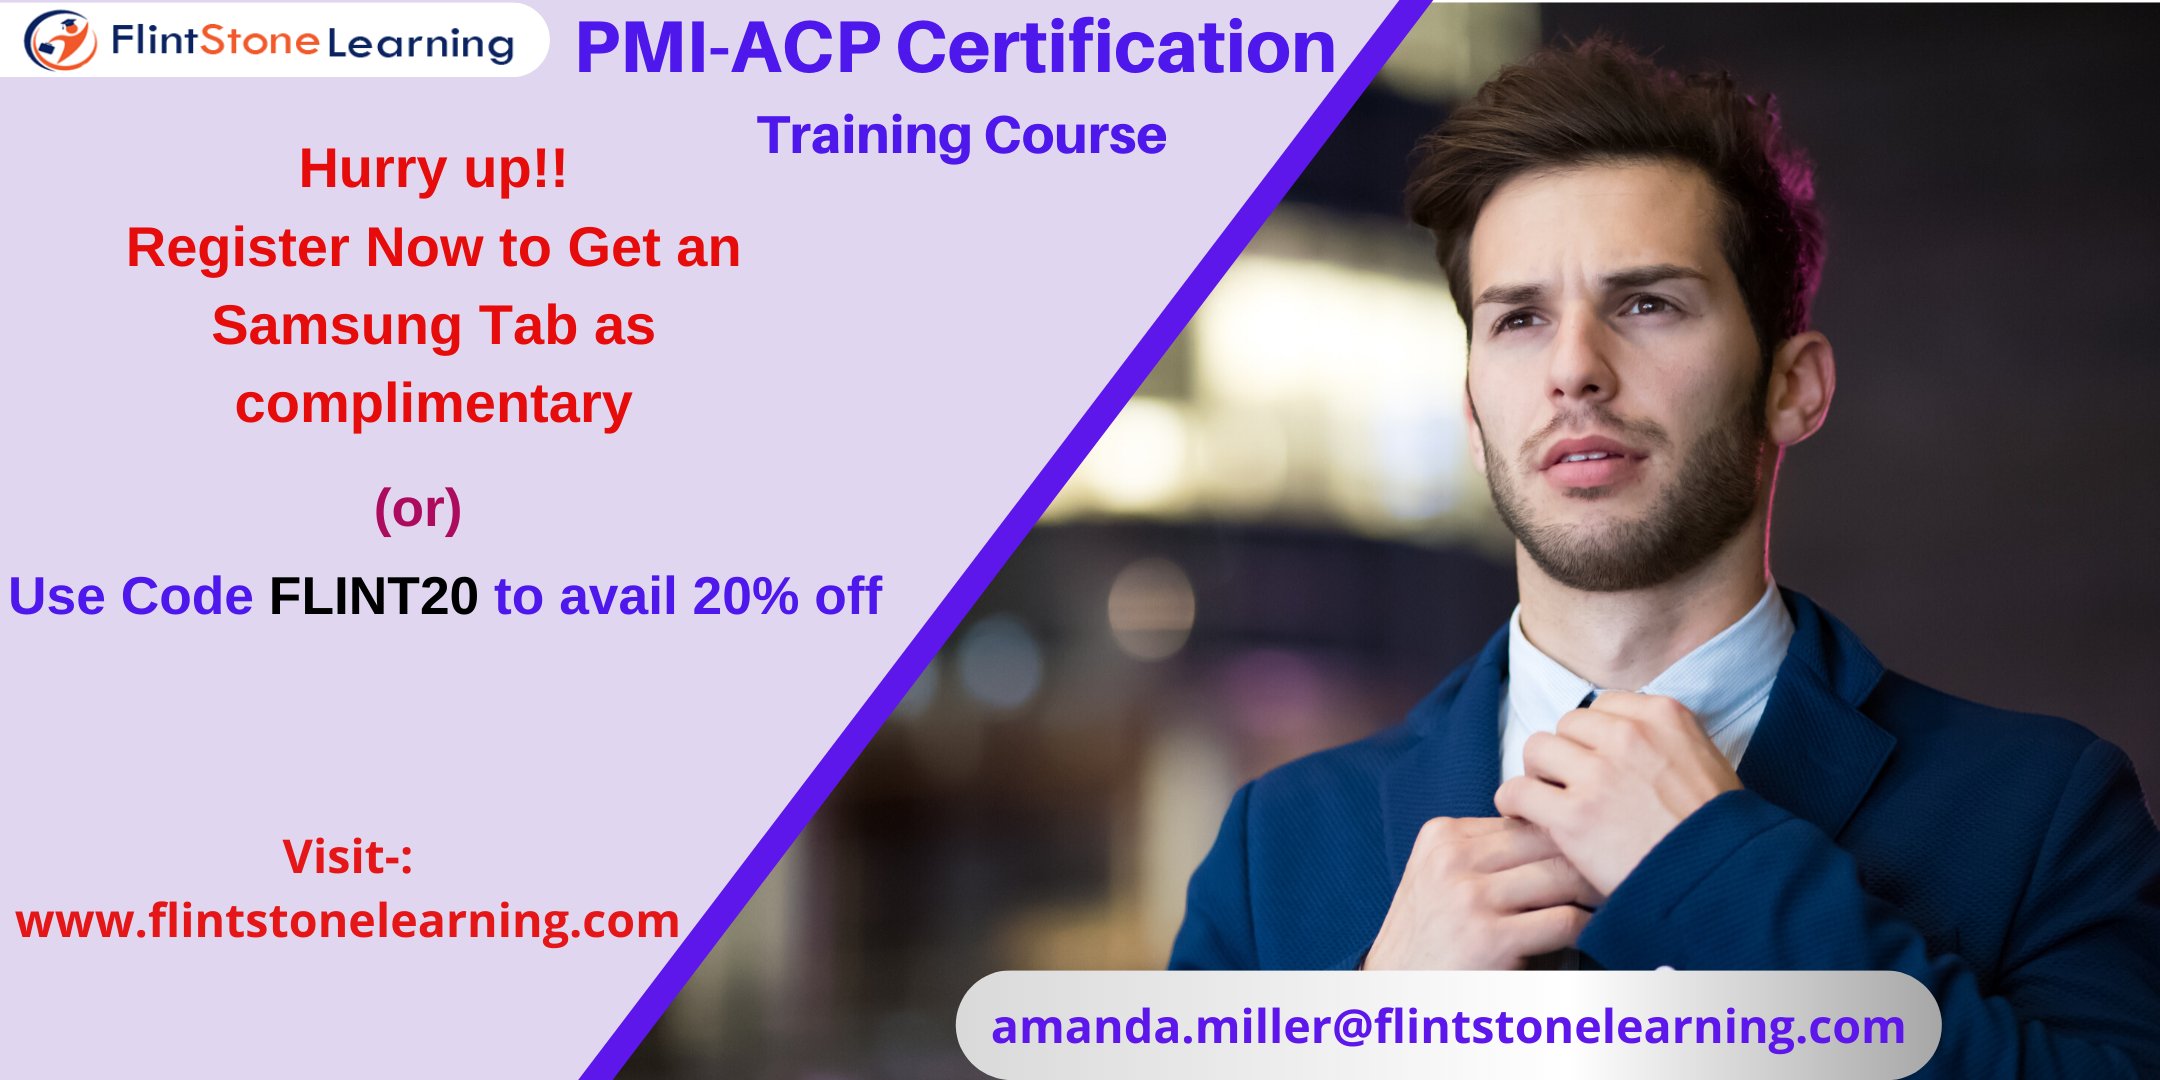 PMI-ACP Certification Training Course in Brea, CA